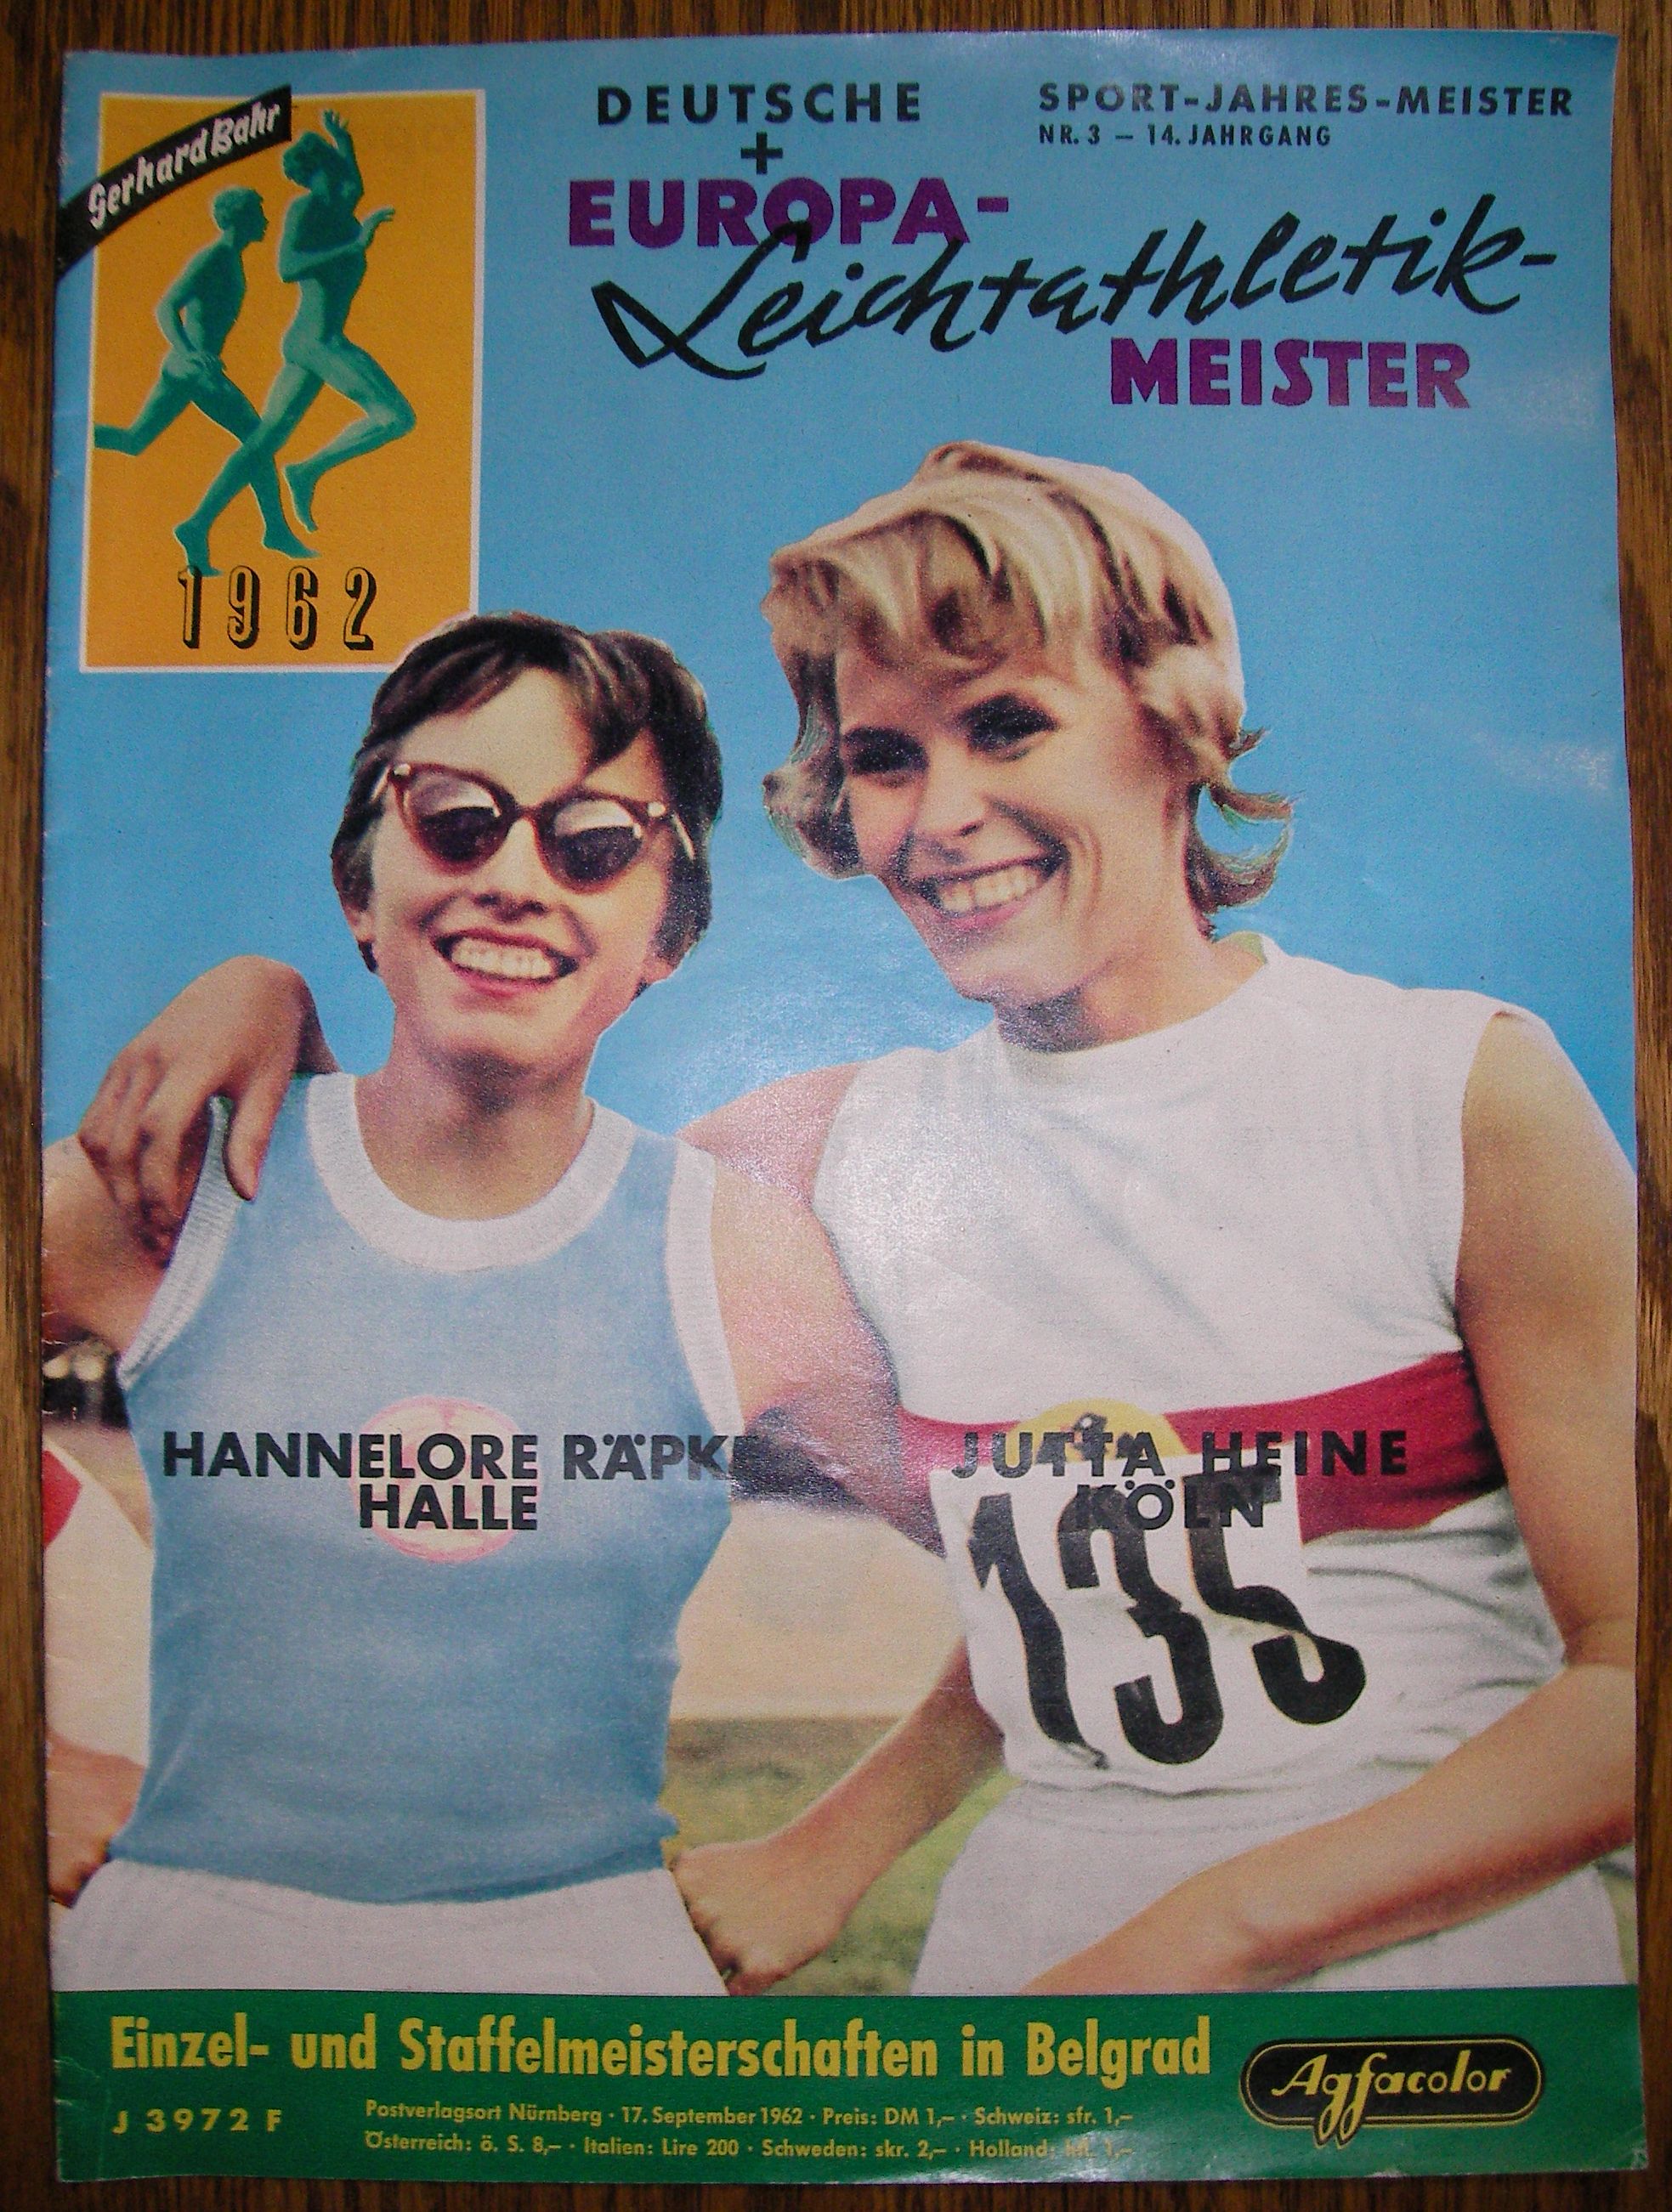 Bahr, Gerhard [Hrsg.]:   Sport-Jahres-Meister, Deutsche + Europa-Leichtathletik-Meister 1962. 